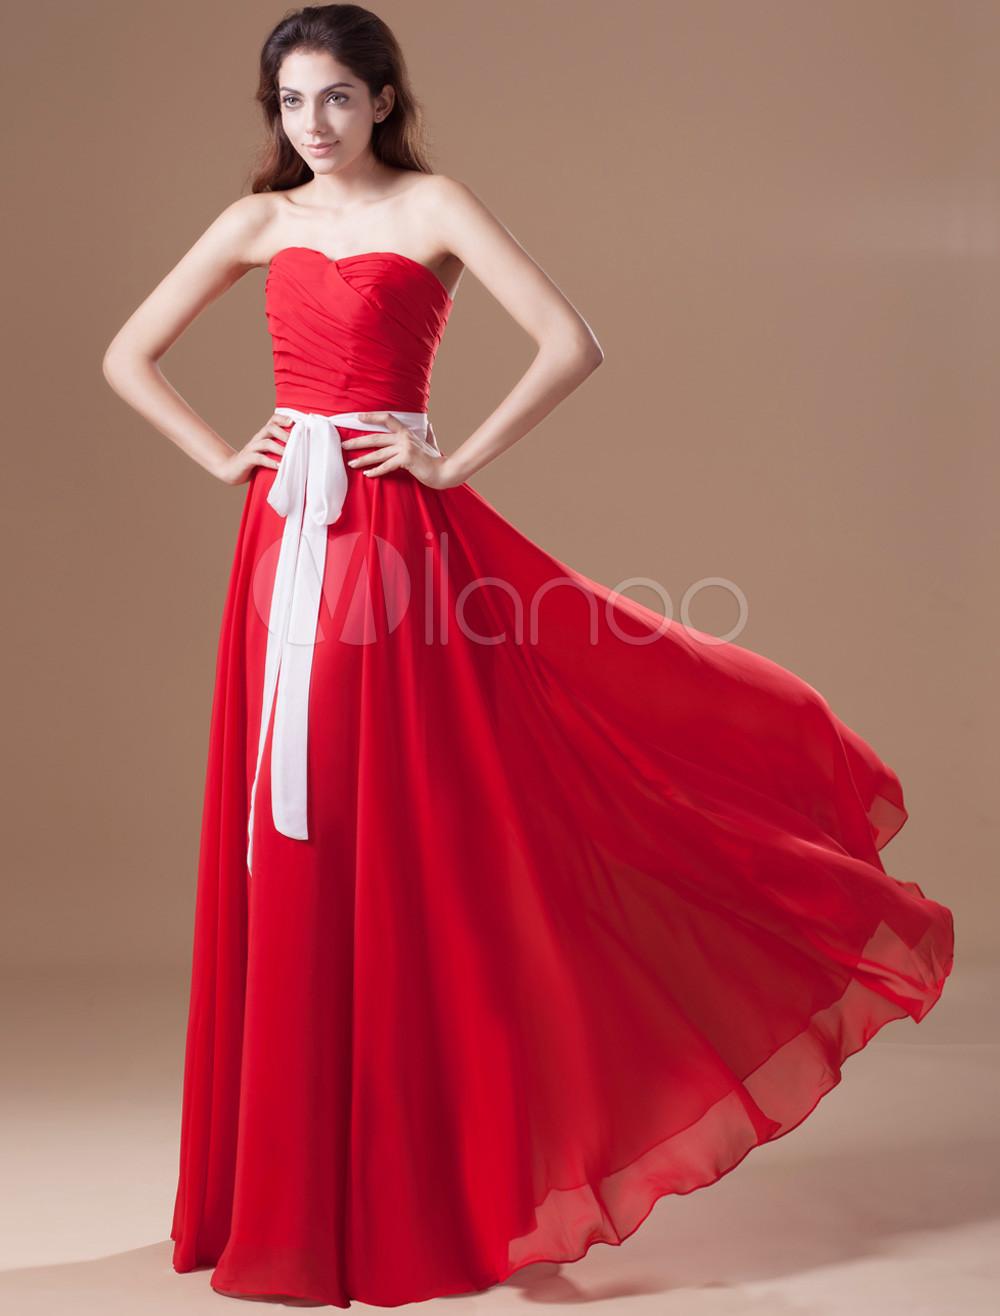 Foto Alquiler de vacaciones encaje rojo gasa vestido de noche vestido cuello Femenil foto 593482